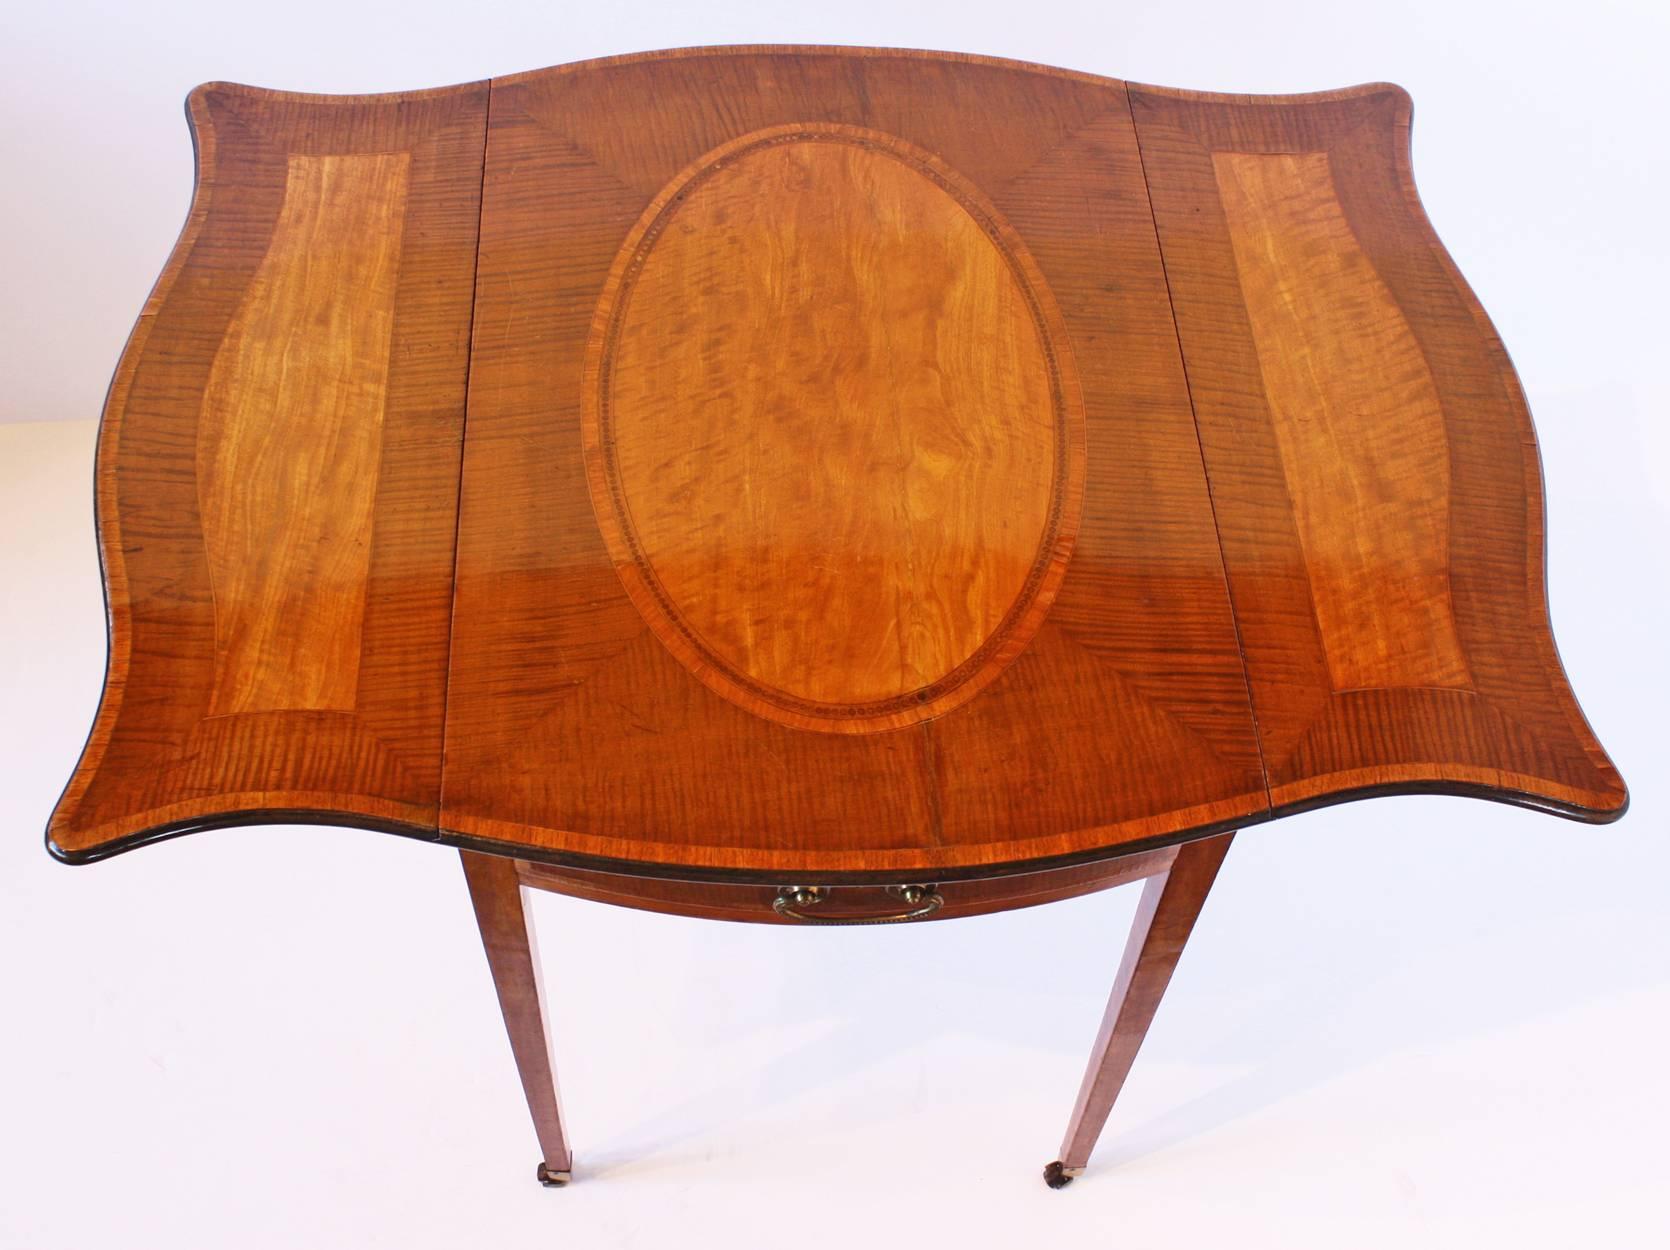 Ein George III Sycamore und Satinwood crossbanded eingelegt Pembroke Tisch, abgerundete rechteckige Platte zentriert ein großes ovales Medaillon, mit konform dekoriert serpentinenförmigen Flügeln, über einem Fries Schublade, befindet sich gegenüber